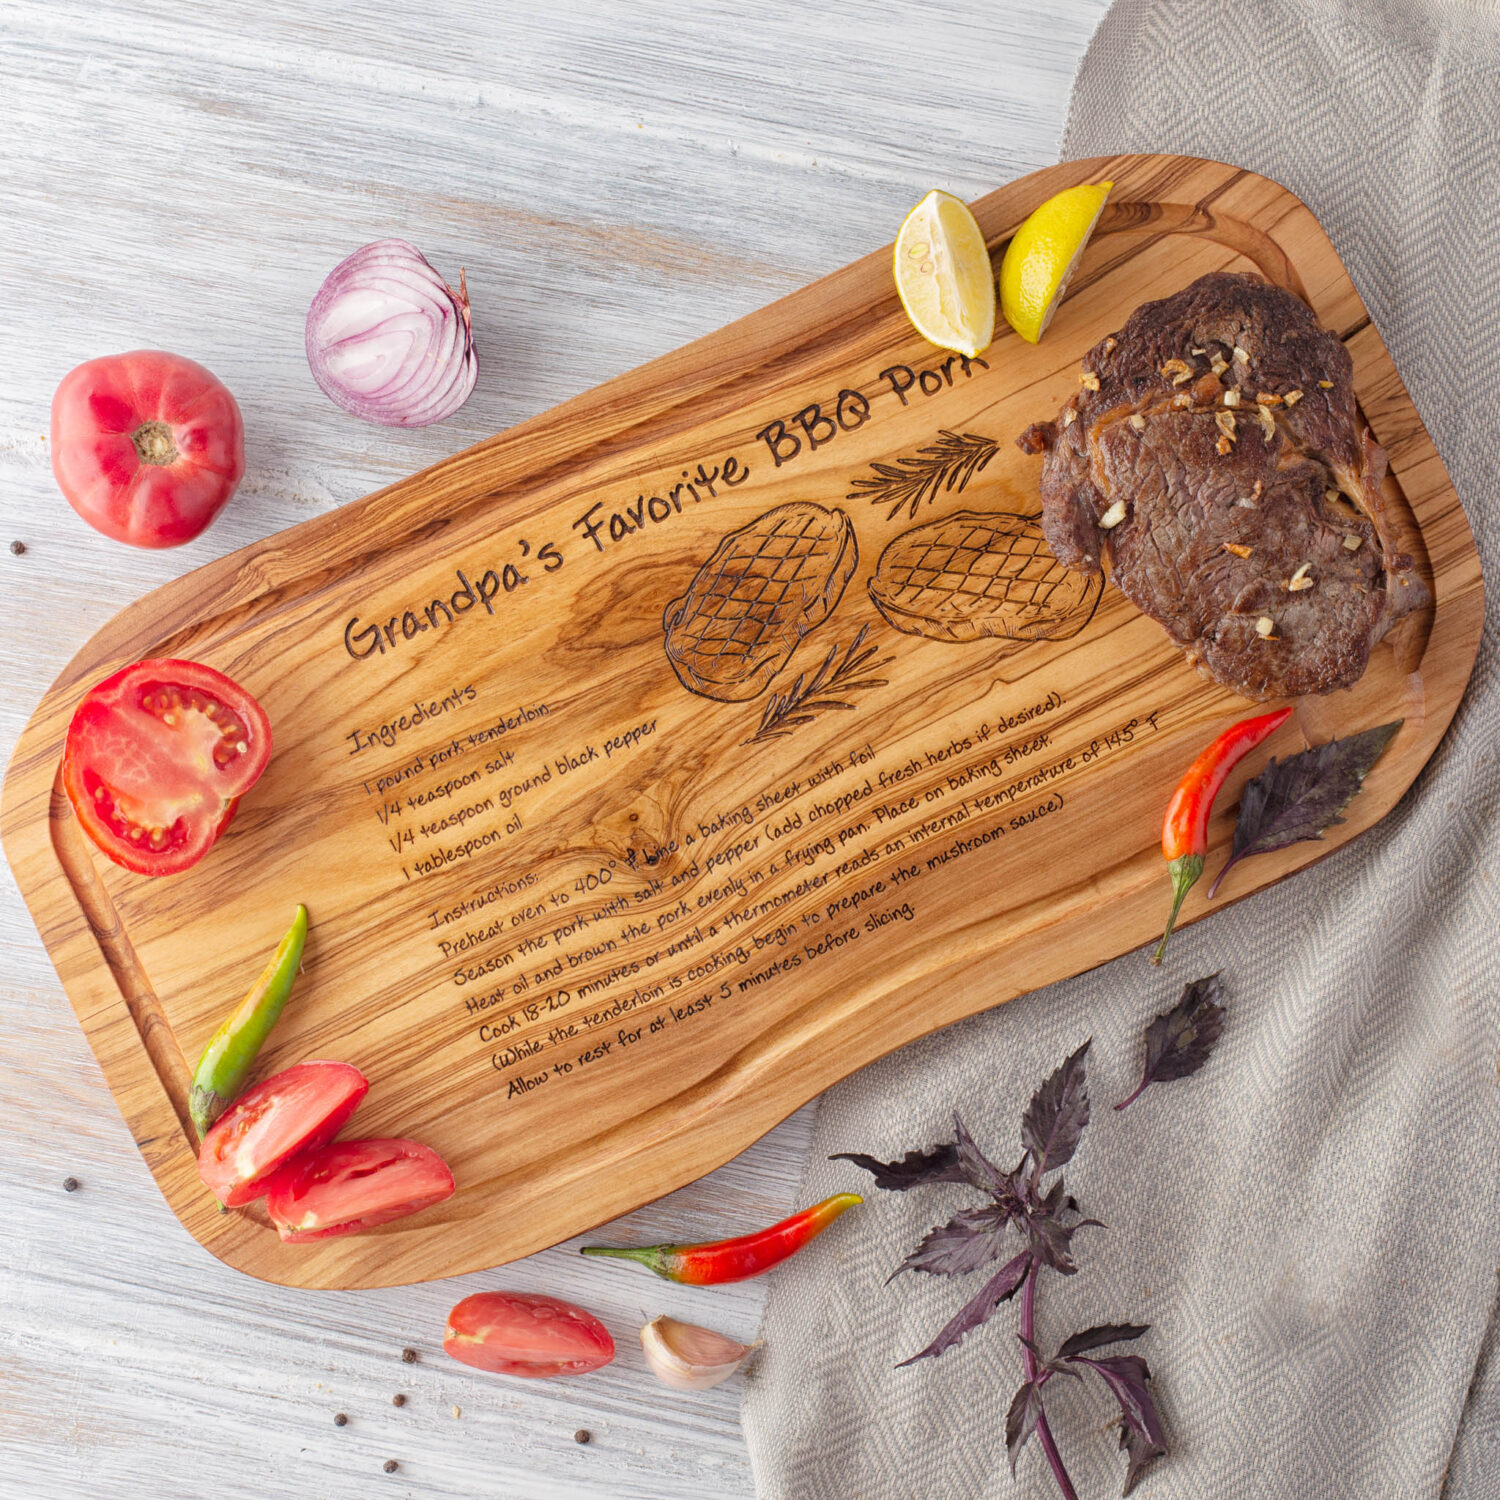 A Recipe Steak Cutting Board with a recipe on it.